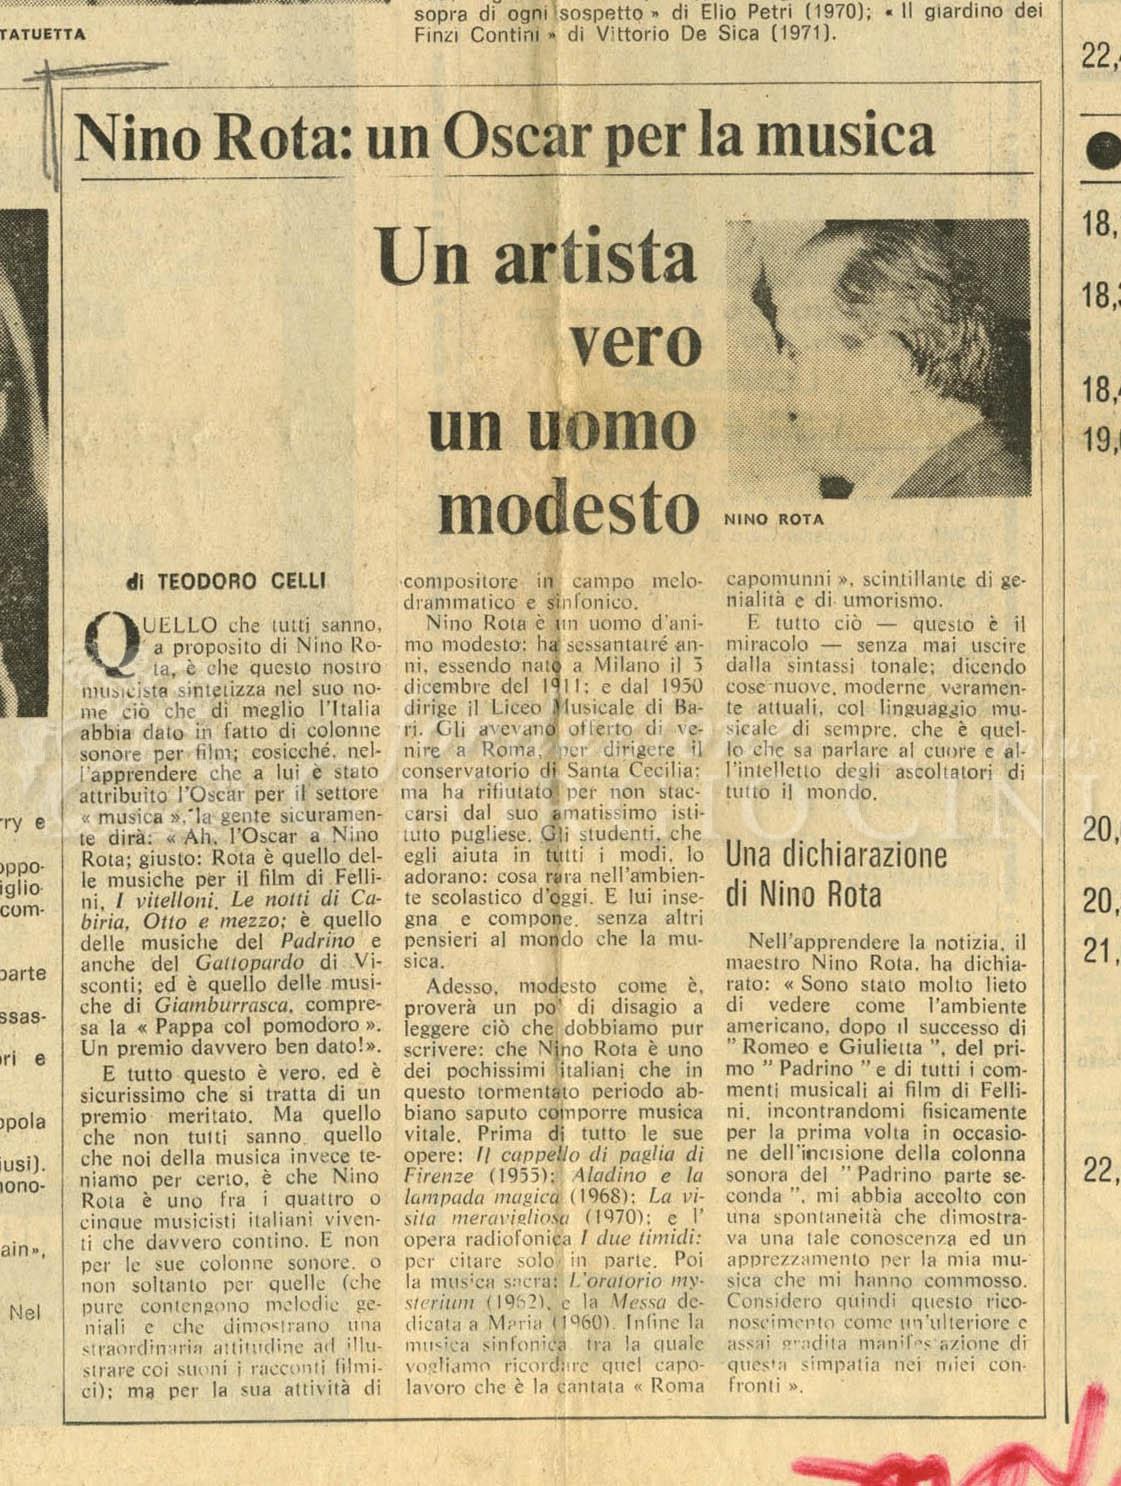 Nino Rota: un Oscar per la musica
				 10 aprile 1975